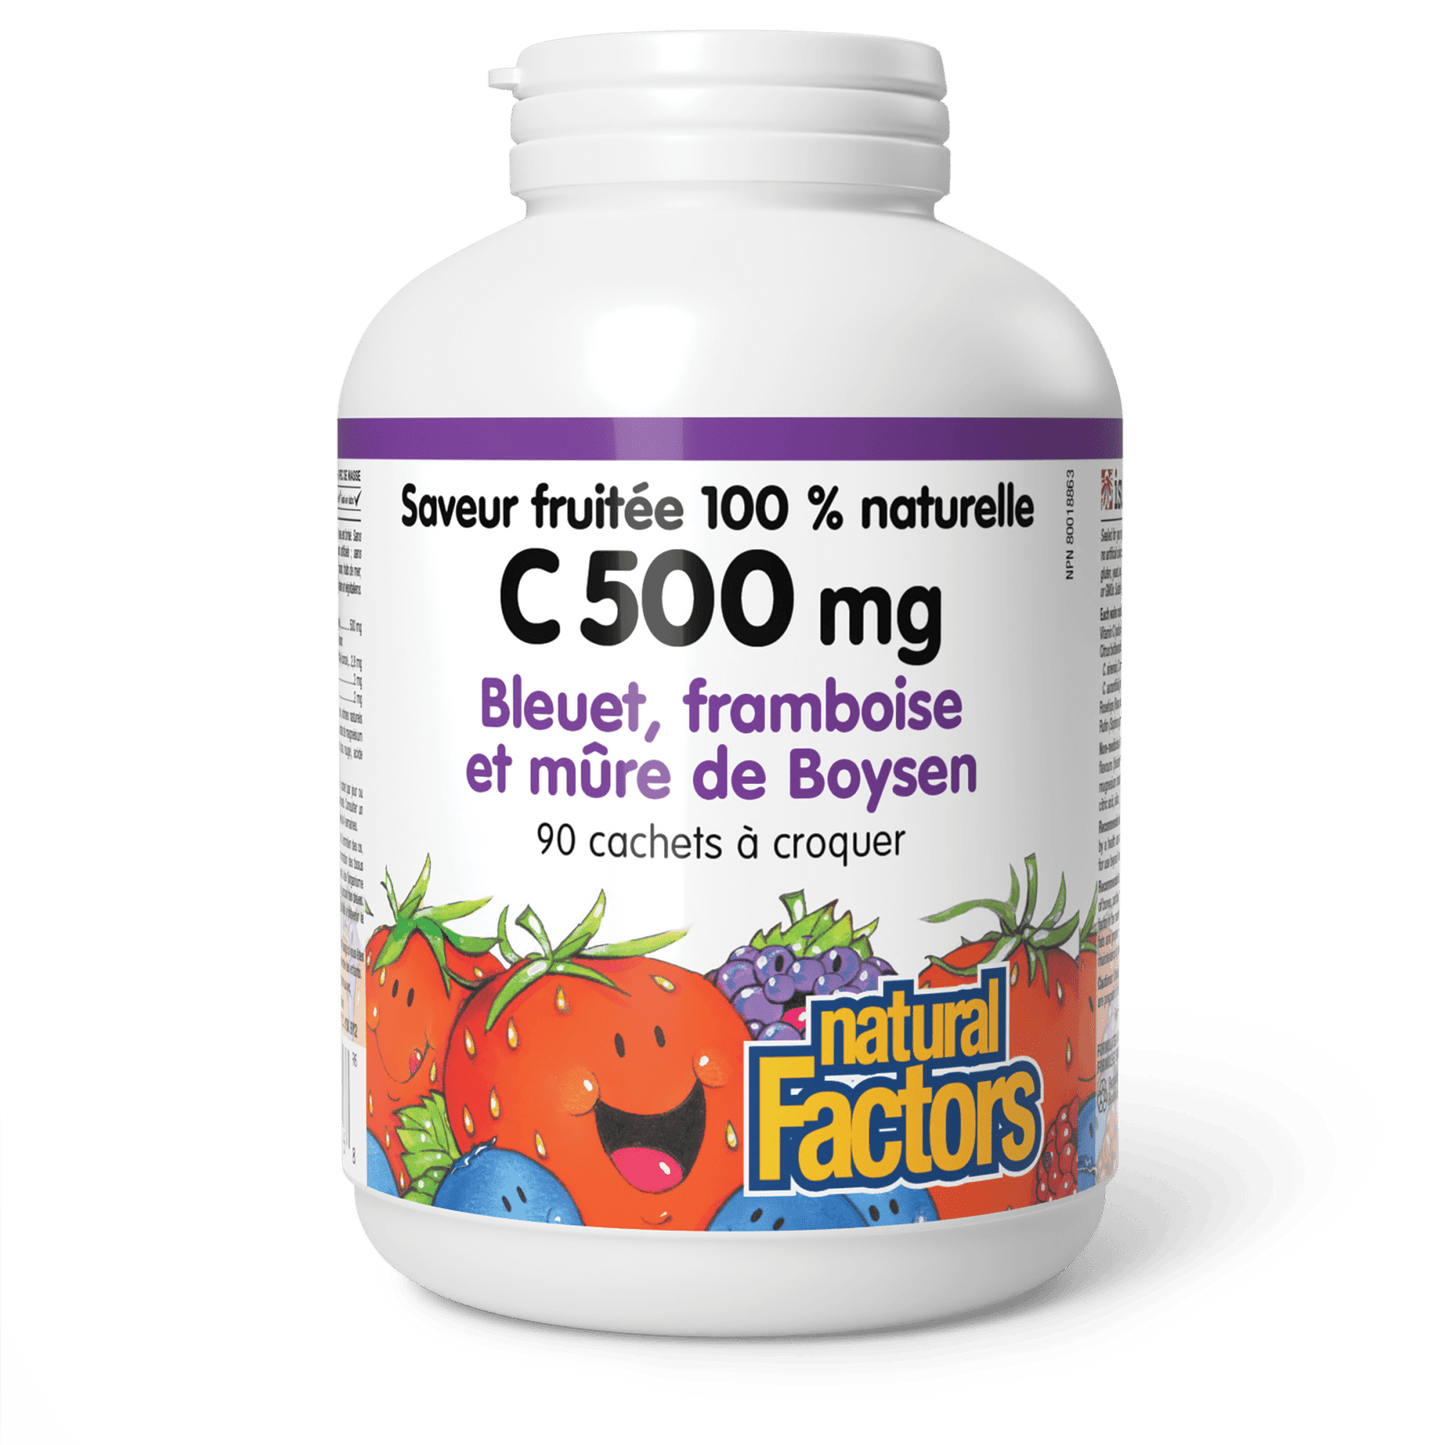 C 500 mg saveur fruitée 100 % naturelle, bleuet, framboise et mûre de Boysen, Natural Factors|v|image|1326